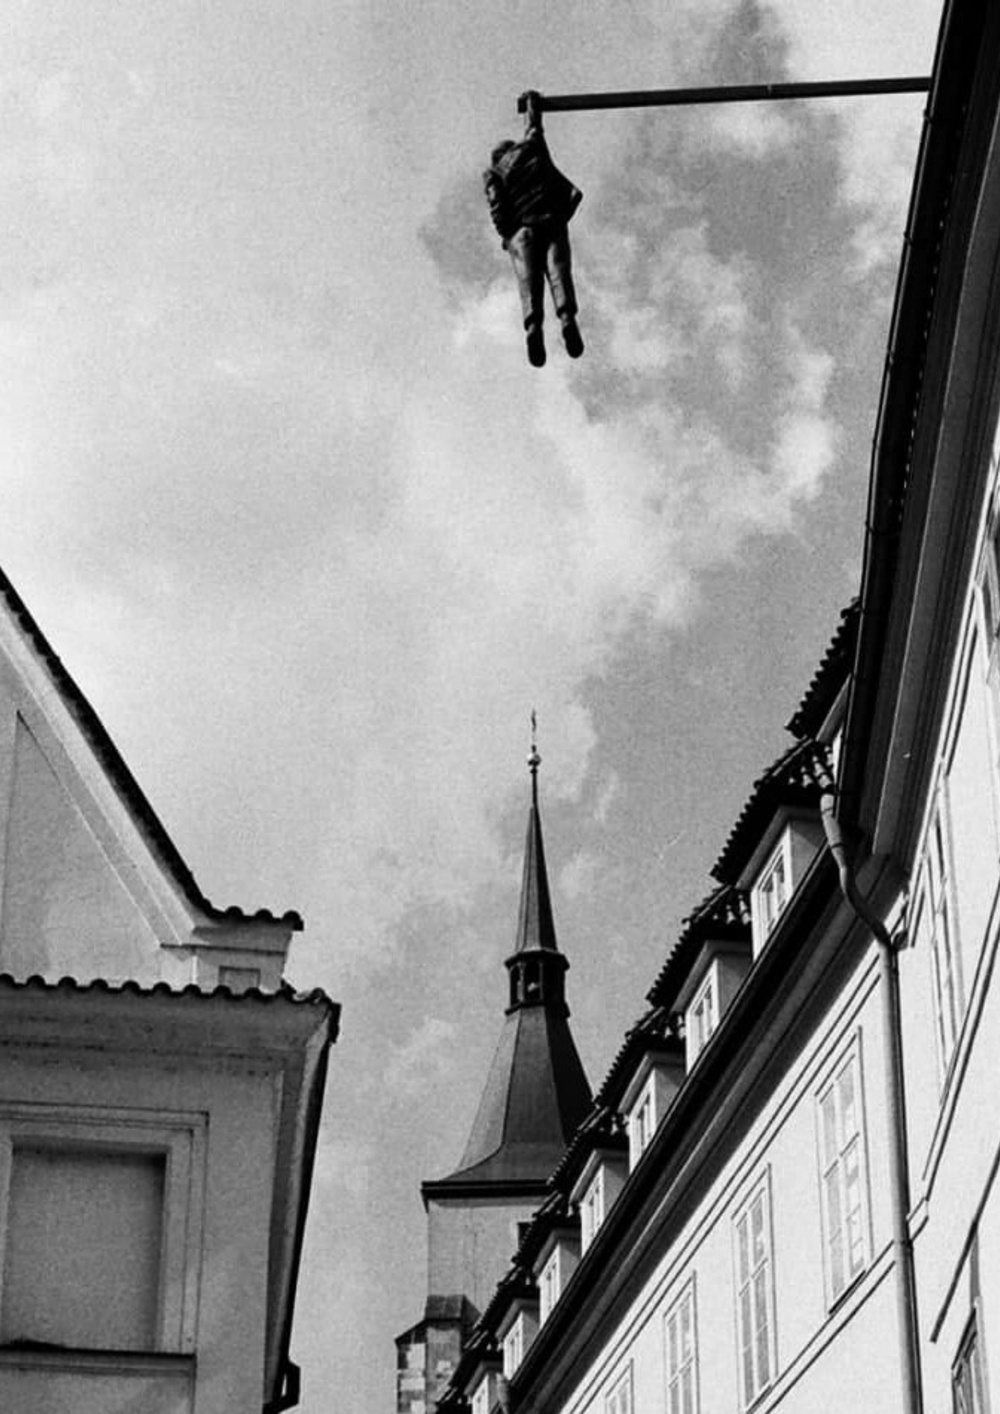 Sigmund Freud, Kunst am Bau von David Černý (1997) in der Husova in Prag. Die Figur stellt Freud und die Todesangst dar. Bild: eigene Aufnahme, Louis Pienkowski, 2020